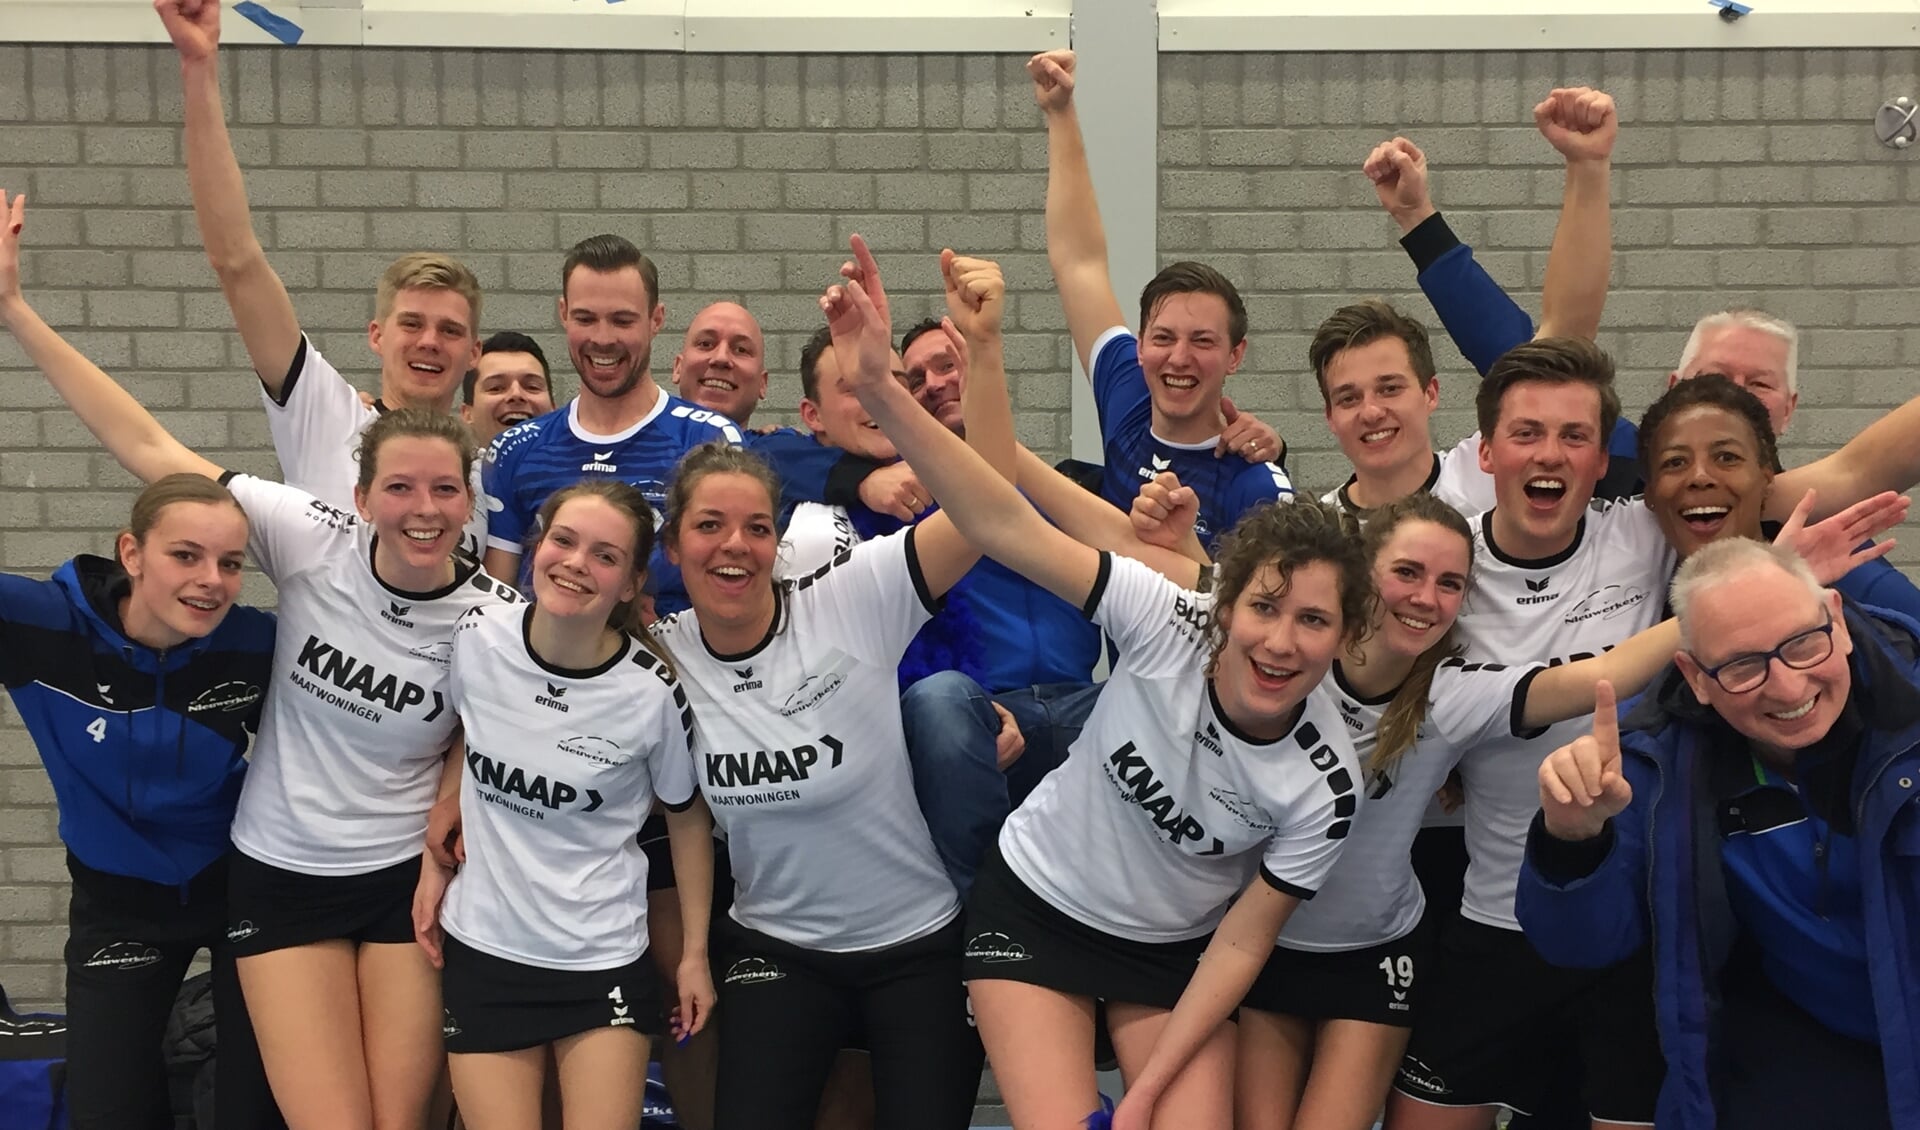 Spelers en staf vieren het kampioenschap van CKV Nieuwerkerk 2 in Sassenheim.